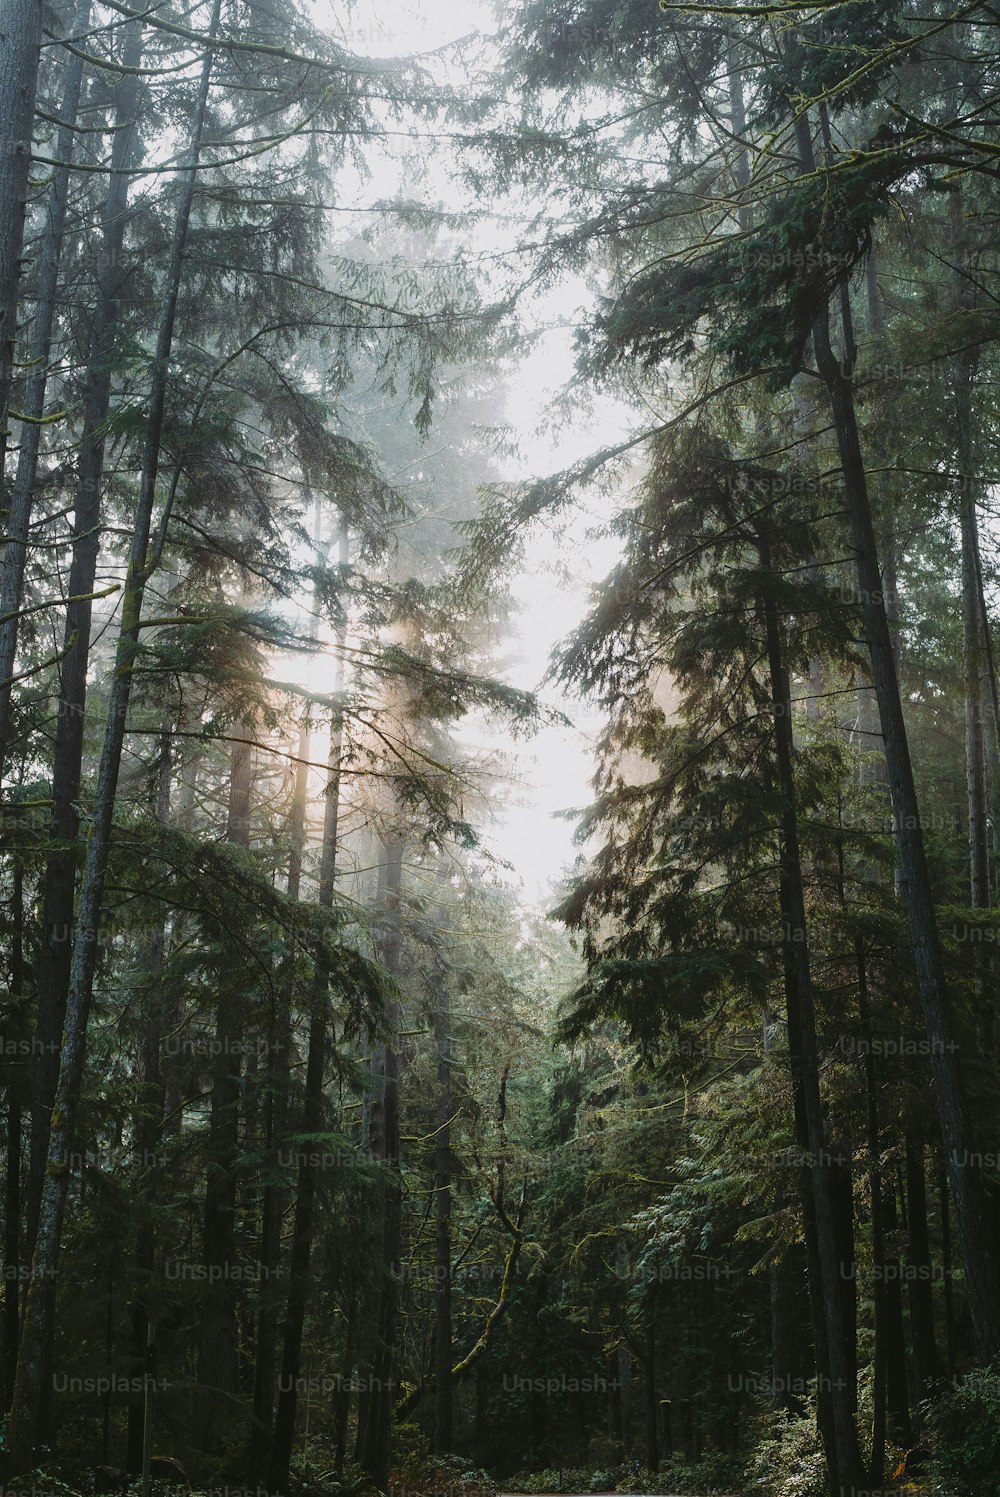 �背の高い木々に囲まれた森の真ん中にある道